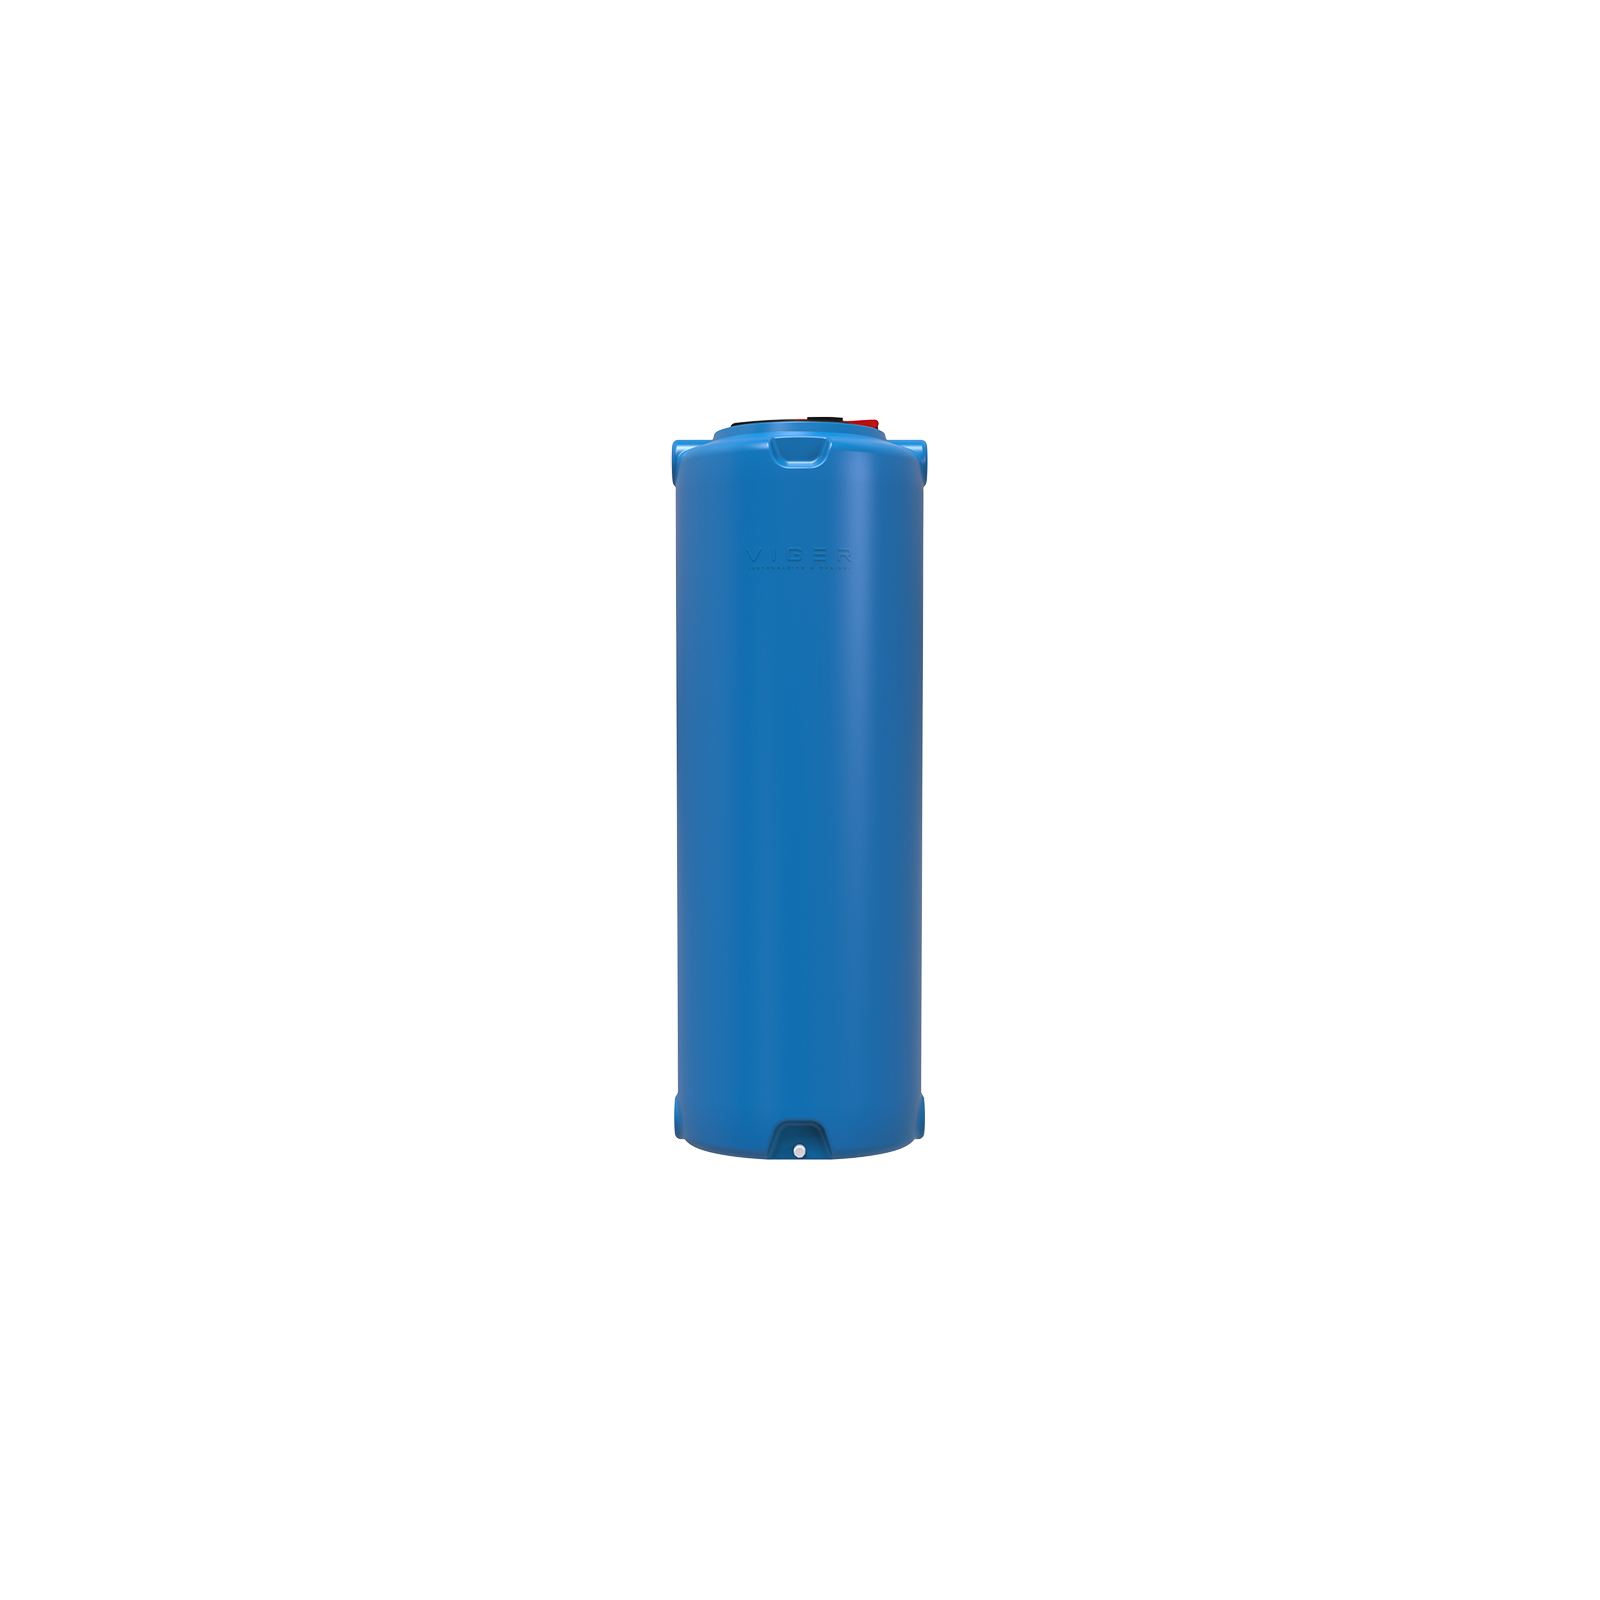 Ємність для води Вігер вертикальна харчова 1000 л вузька, кришка з клапаном синя (13231)